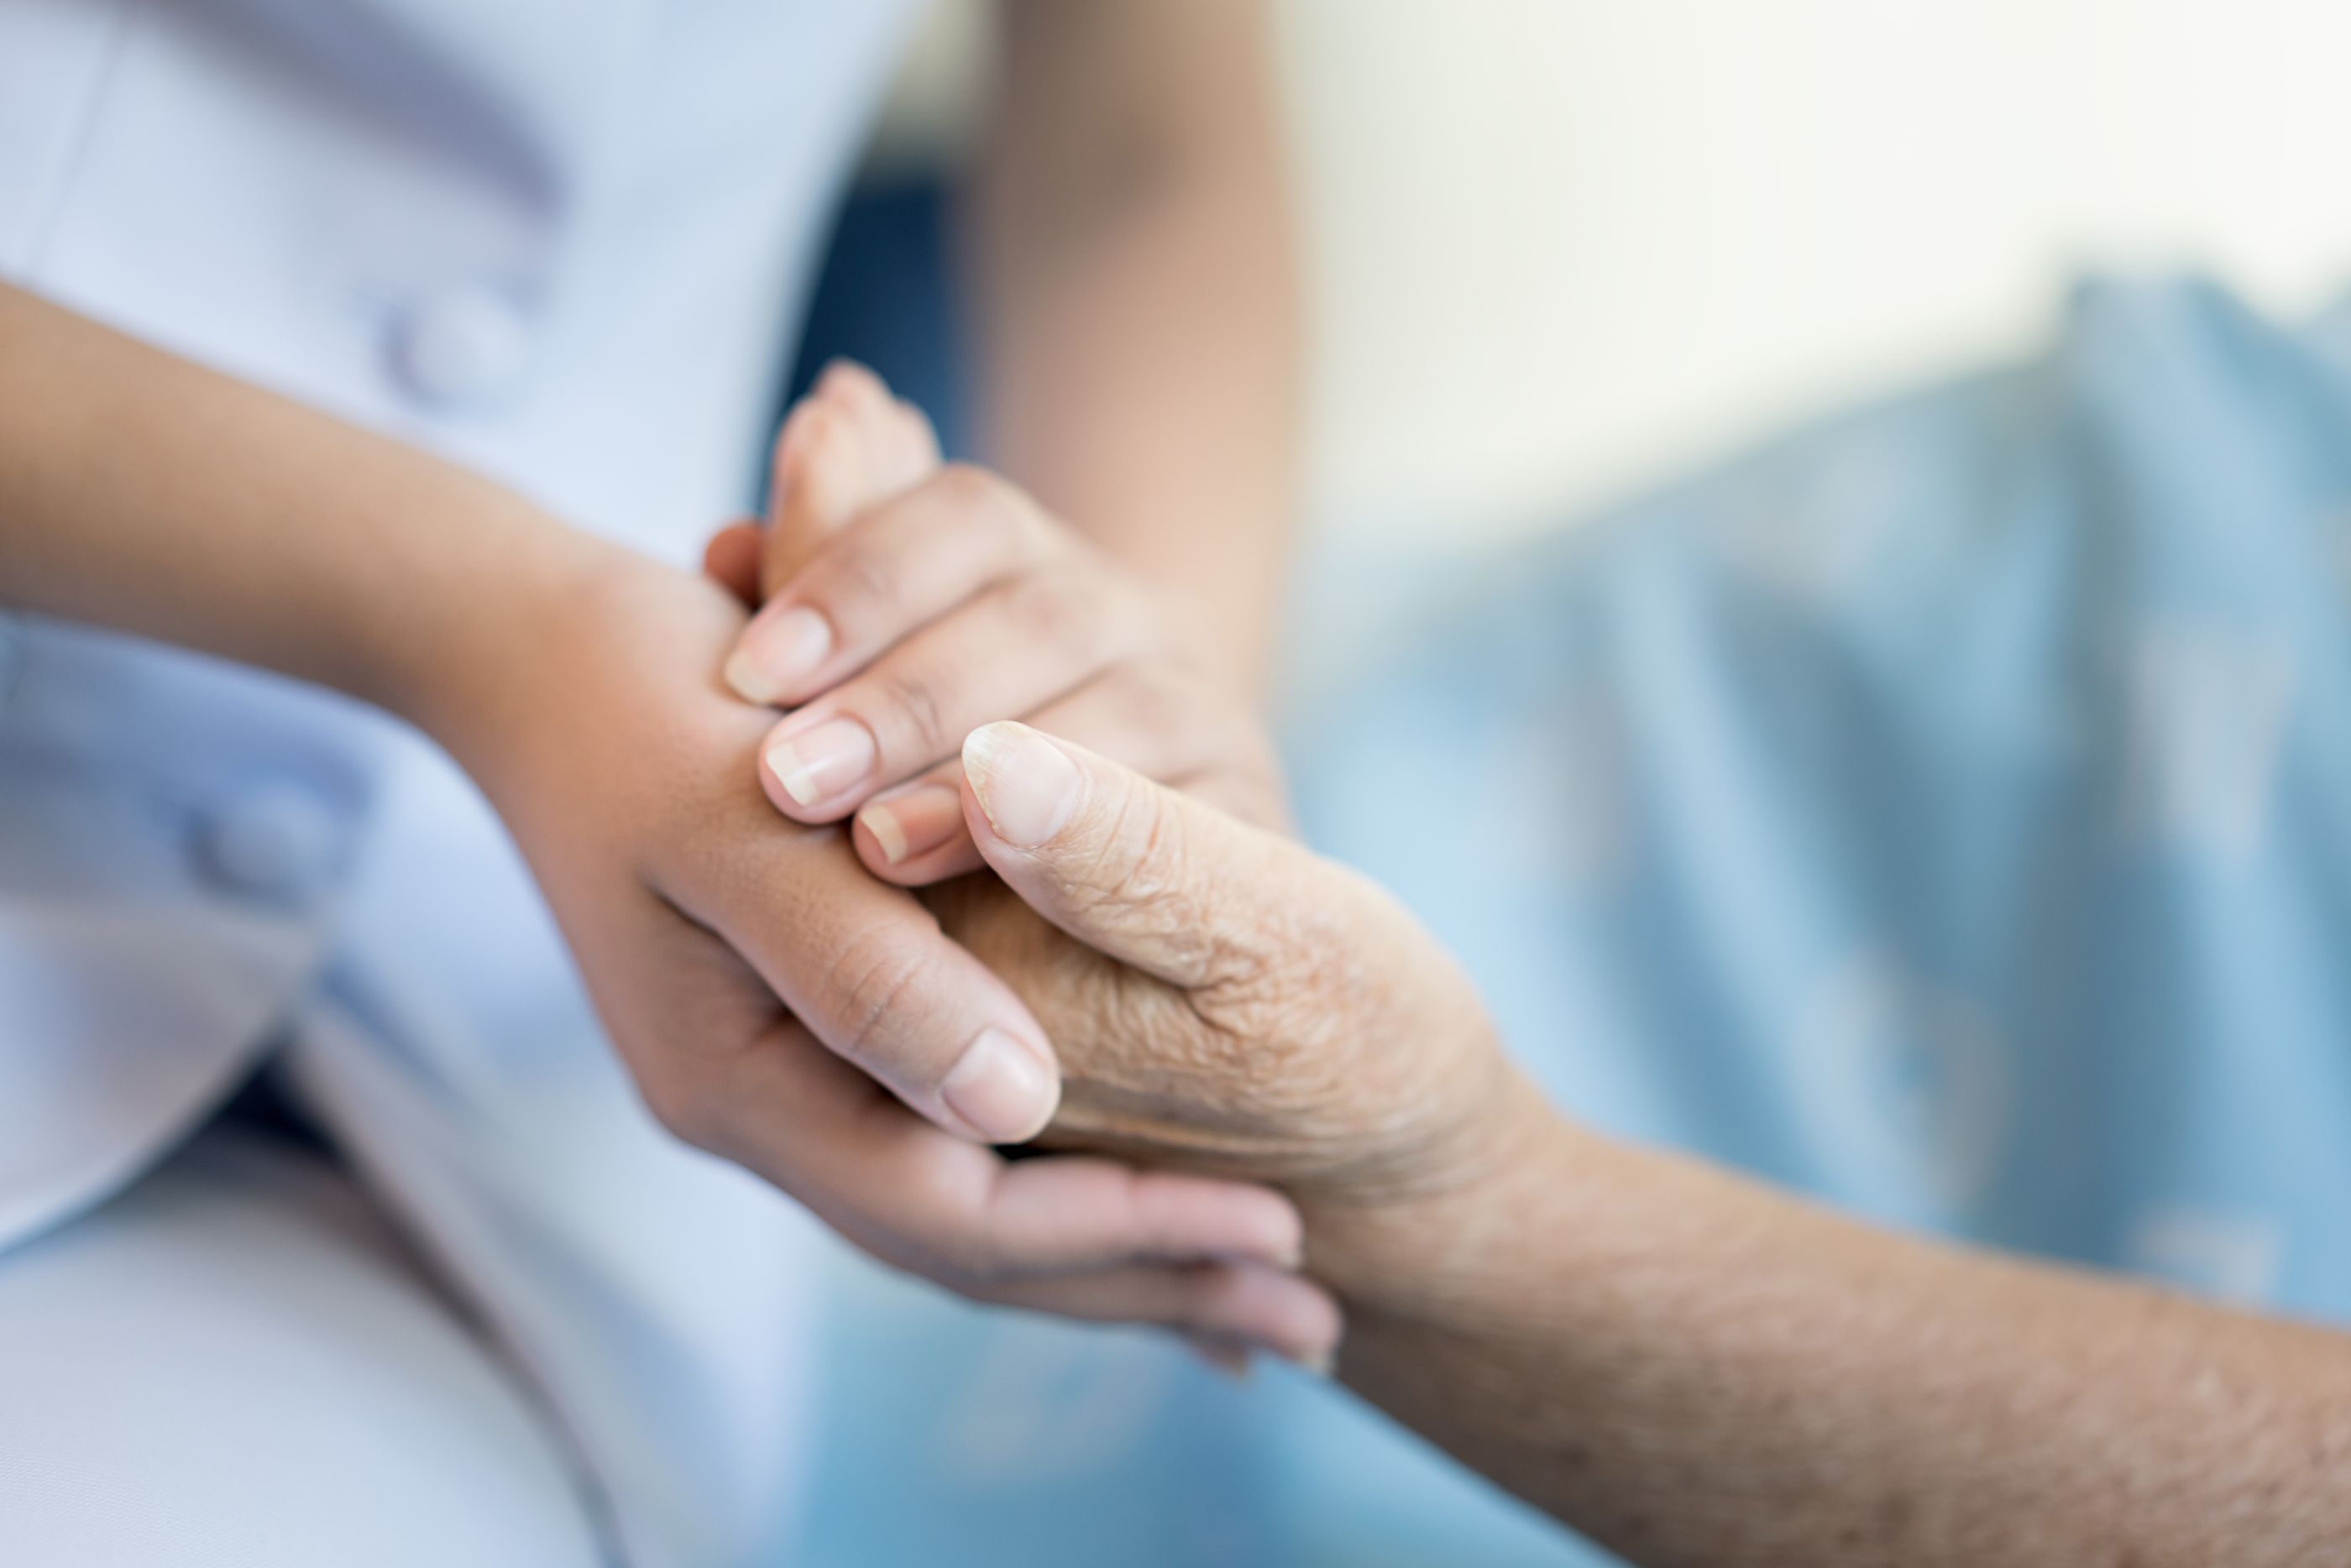 Los geriatras advierten del "menoscabo evidente" de la dignidad de los mayores en la pandemia